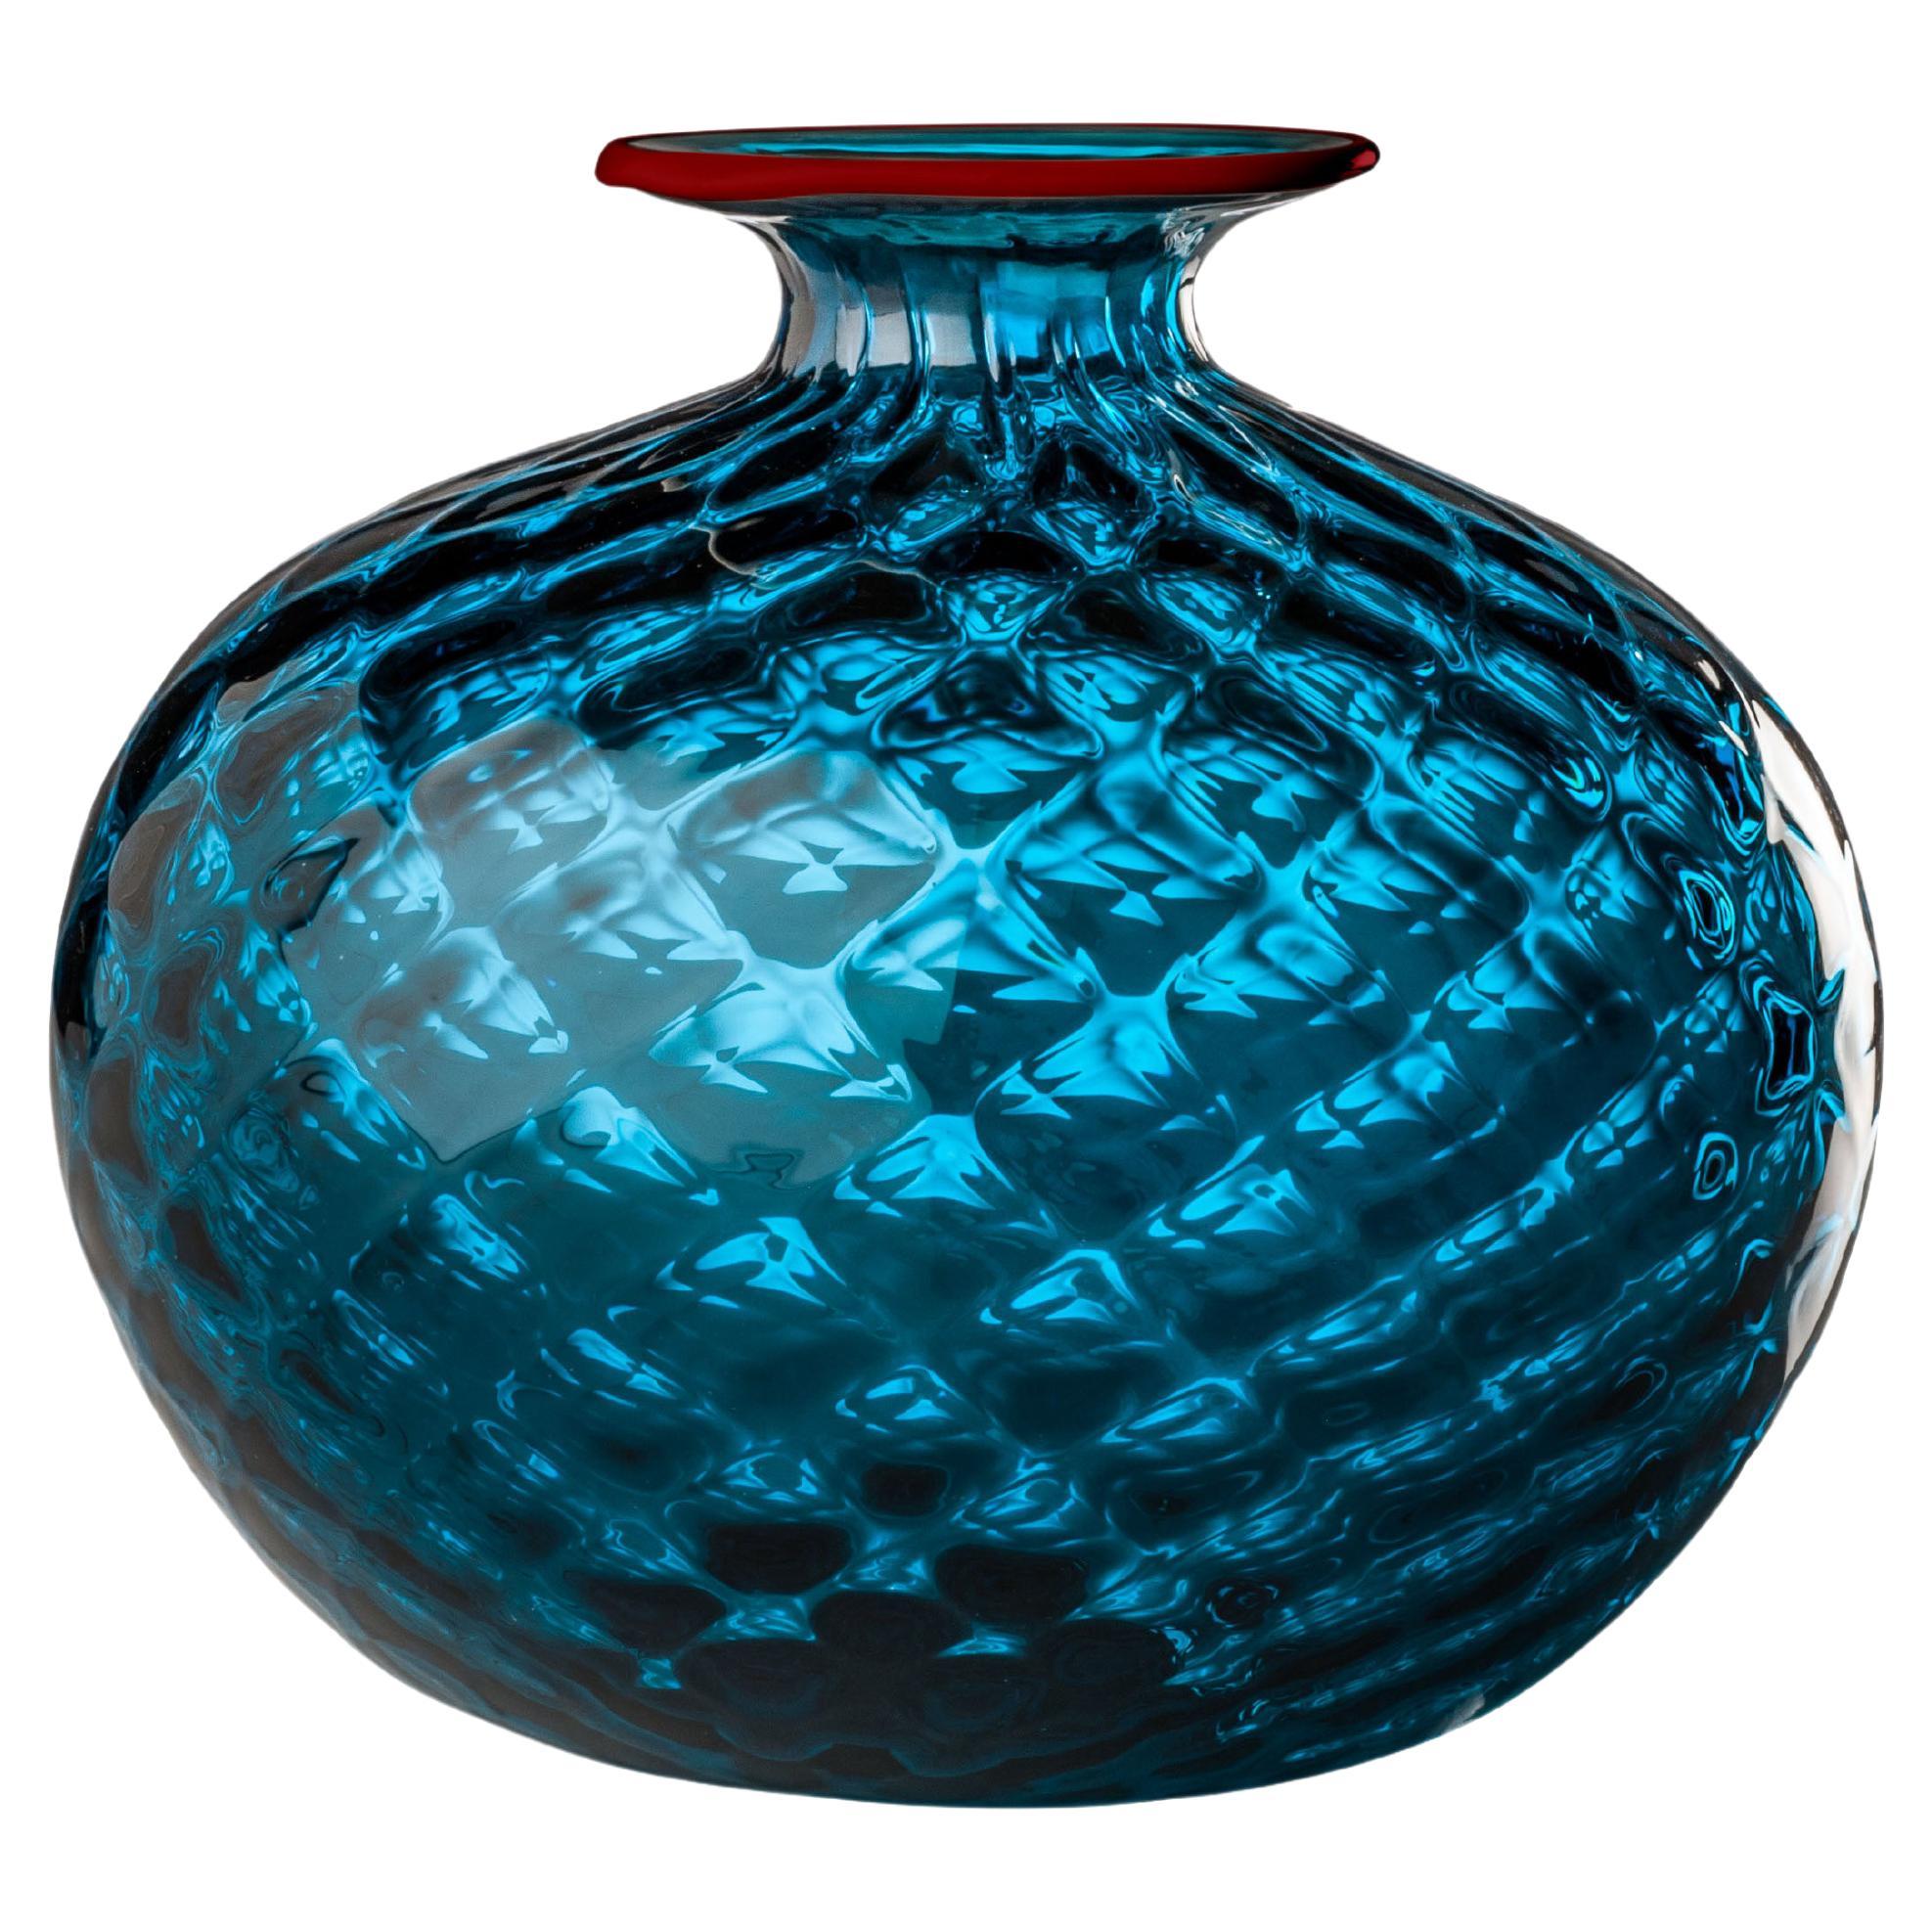 Monofiore Balaton Short Glass Vase in Horizon Red Thread Rim by Venini For Sale